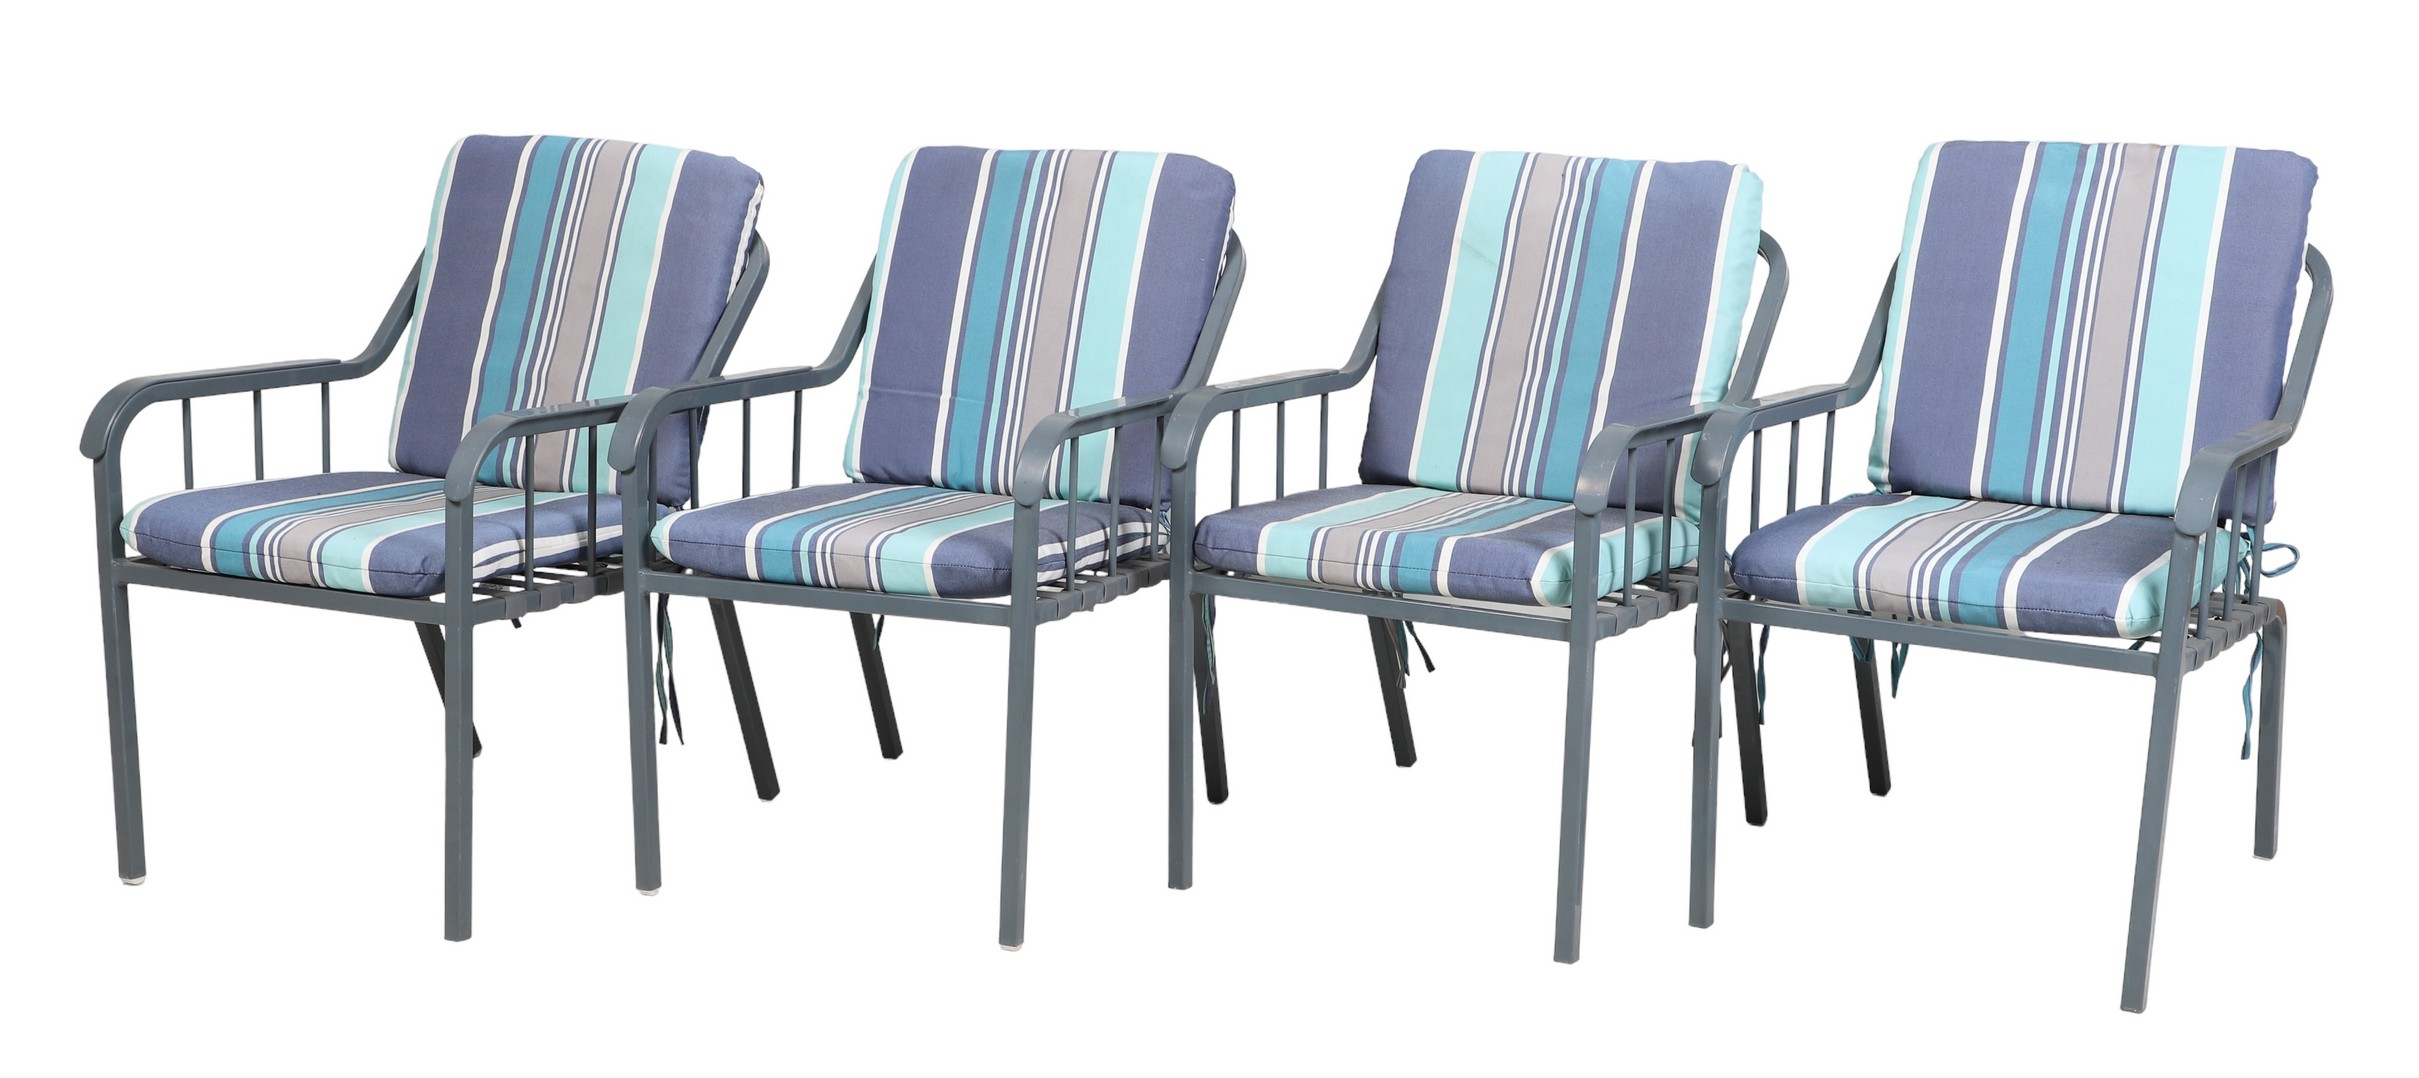  4 Patio armchairs striped cushions  2e16c3